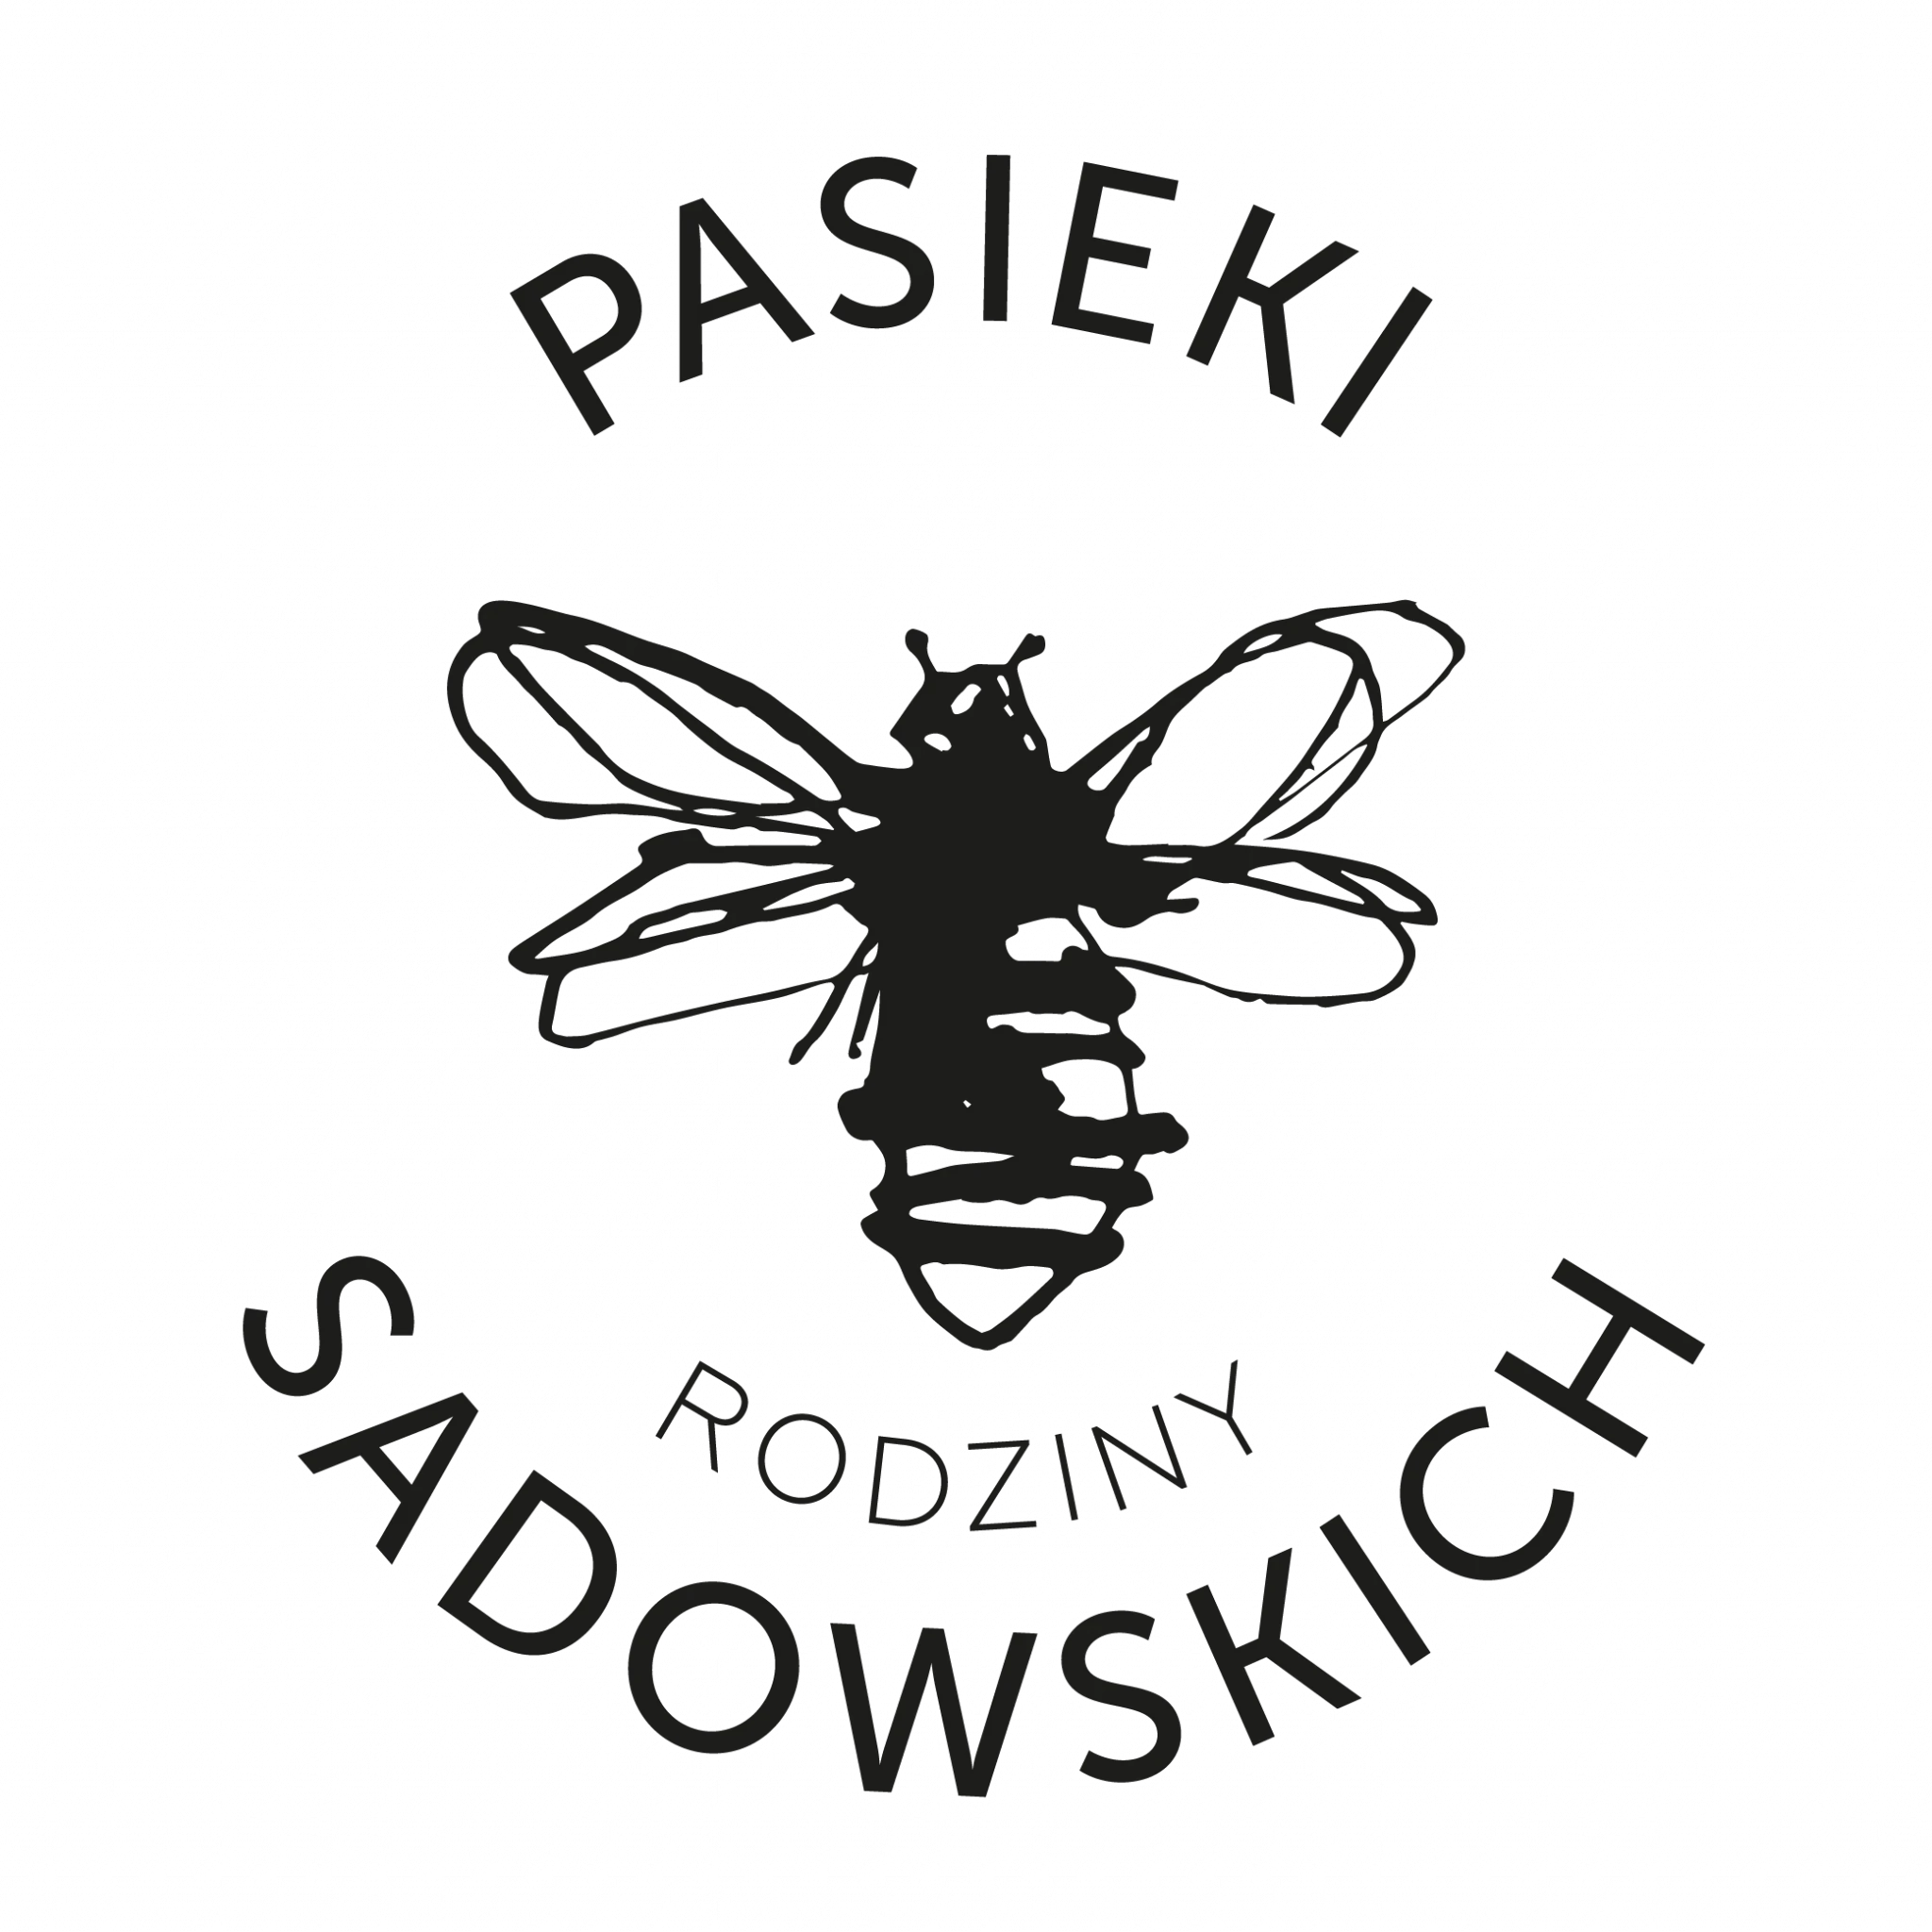 pasiekisadowskich.pl